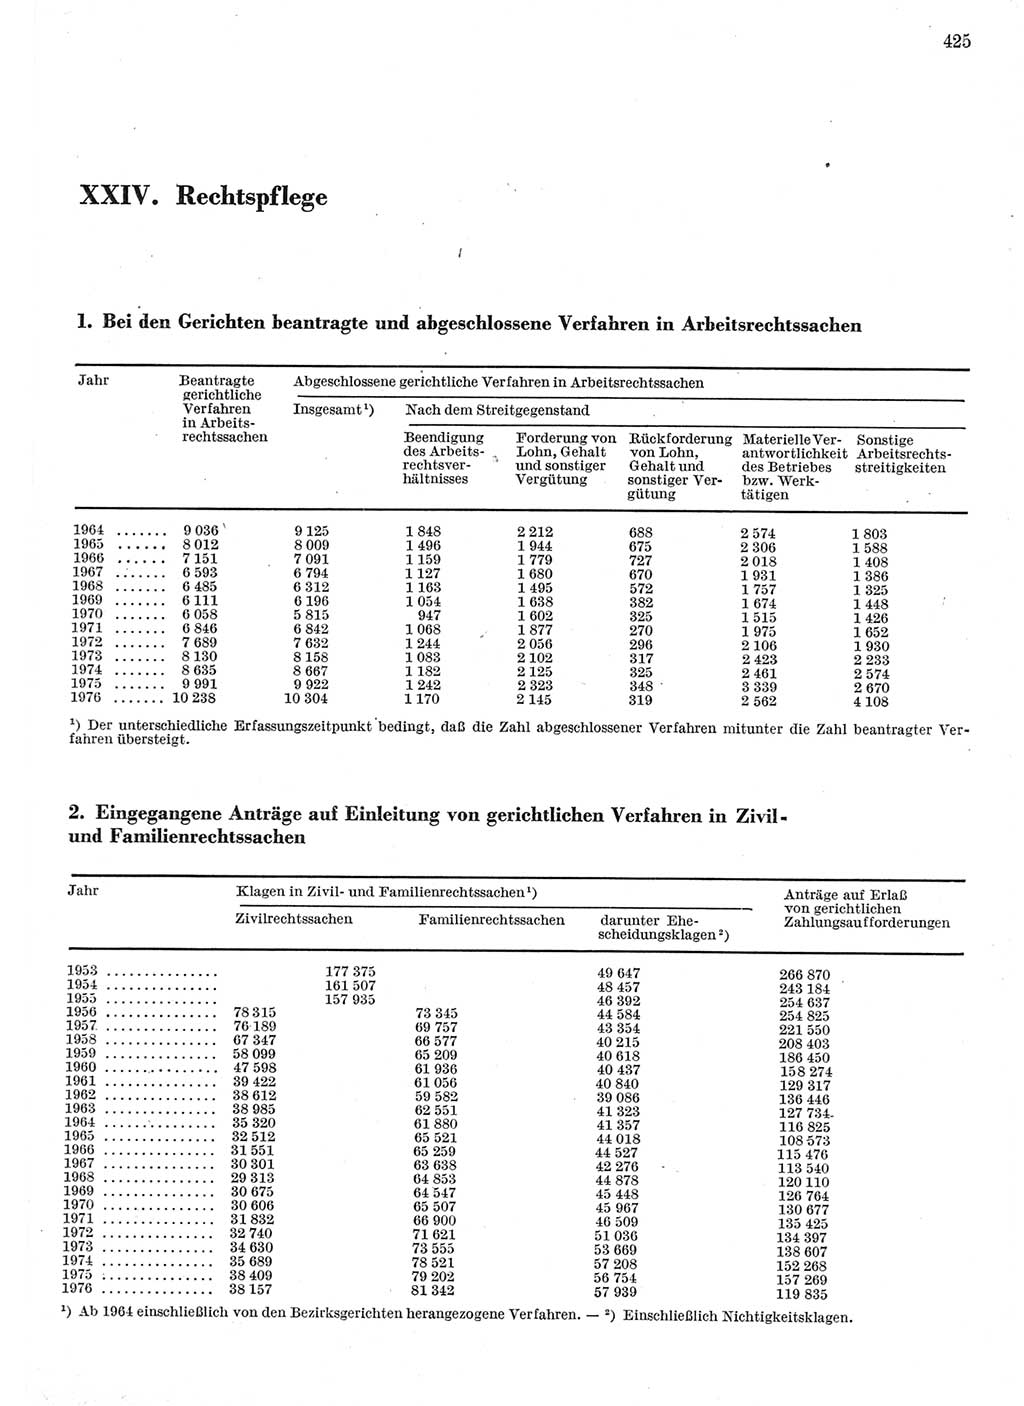 Statistisches Jahrbuch der Deutschen Demokratischen Republik (DDR) 1977, Seite 425 (Stat. Jb. DDR 1977, S. 425)